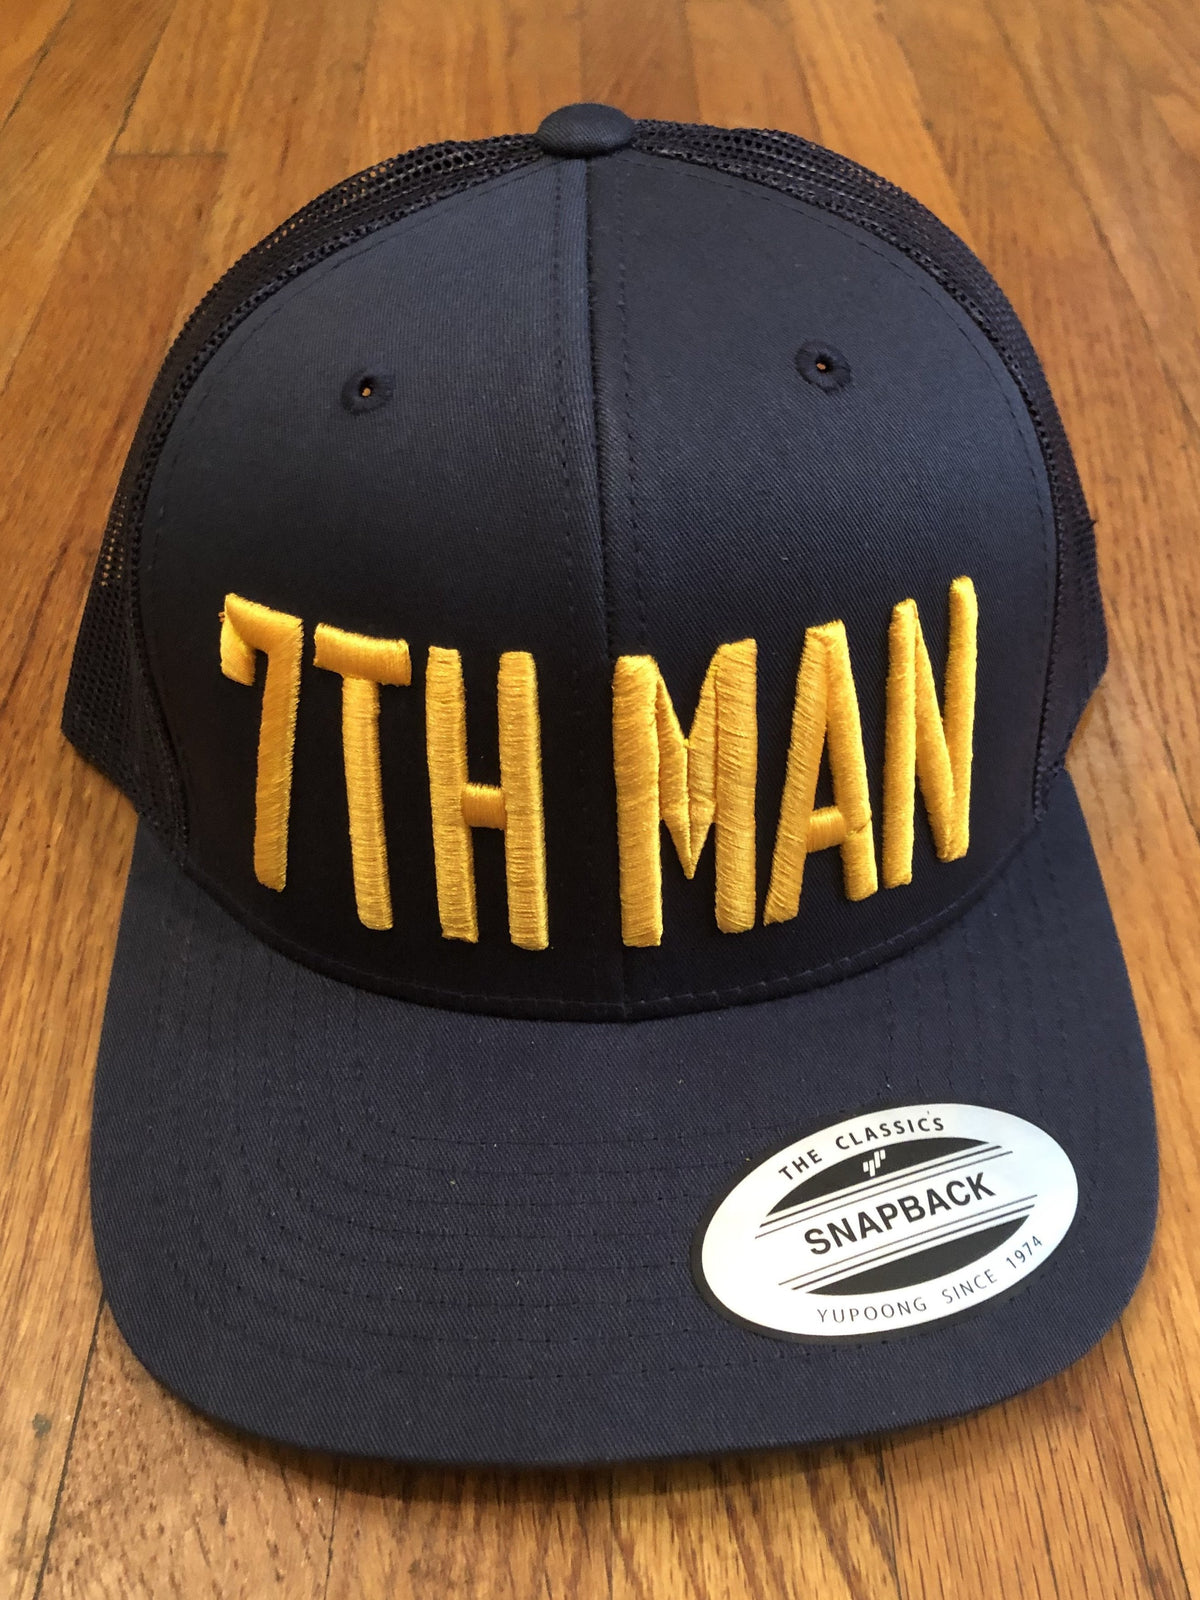 7th Man Hat Snapback - So Nashville